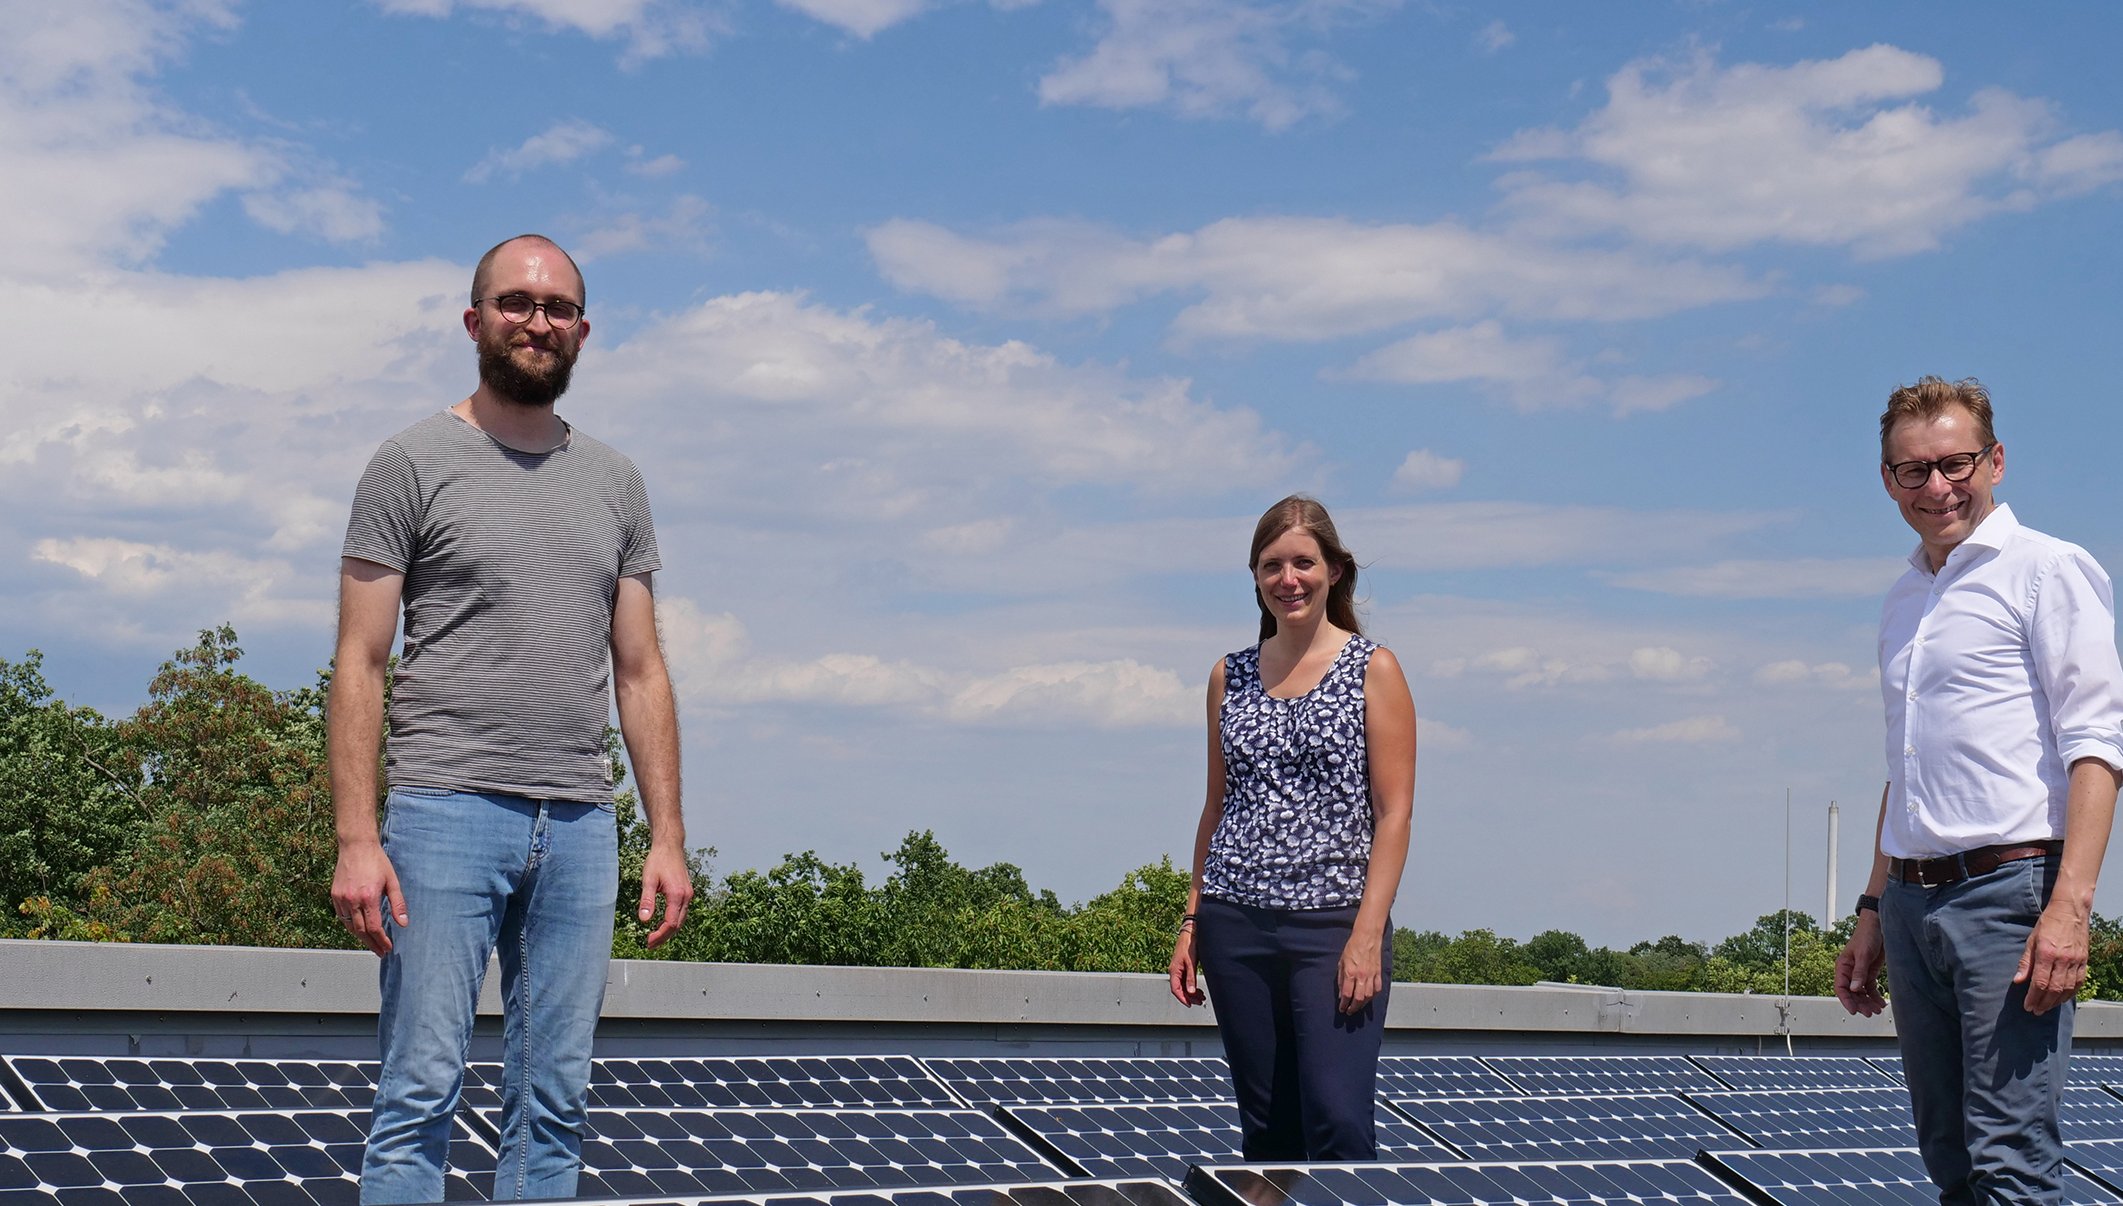 Prorektor Prof. Dr. Robert Pawlowski (r.) mit dem neuen Klimaschutzmanager der HKA Géza Solar (l.) und Selma Janssen, Nachhaltigkeits- und Energiemanagerin der Hochschule (m.), bei einer Photovoltaikanlage auf dem Dach eines Hochschulgebäudes 